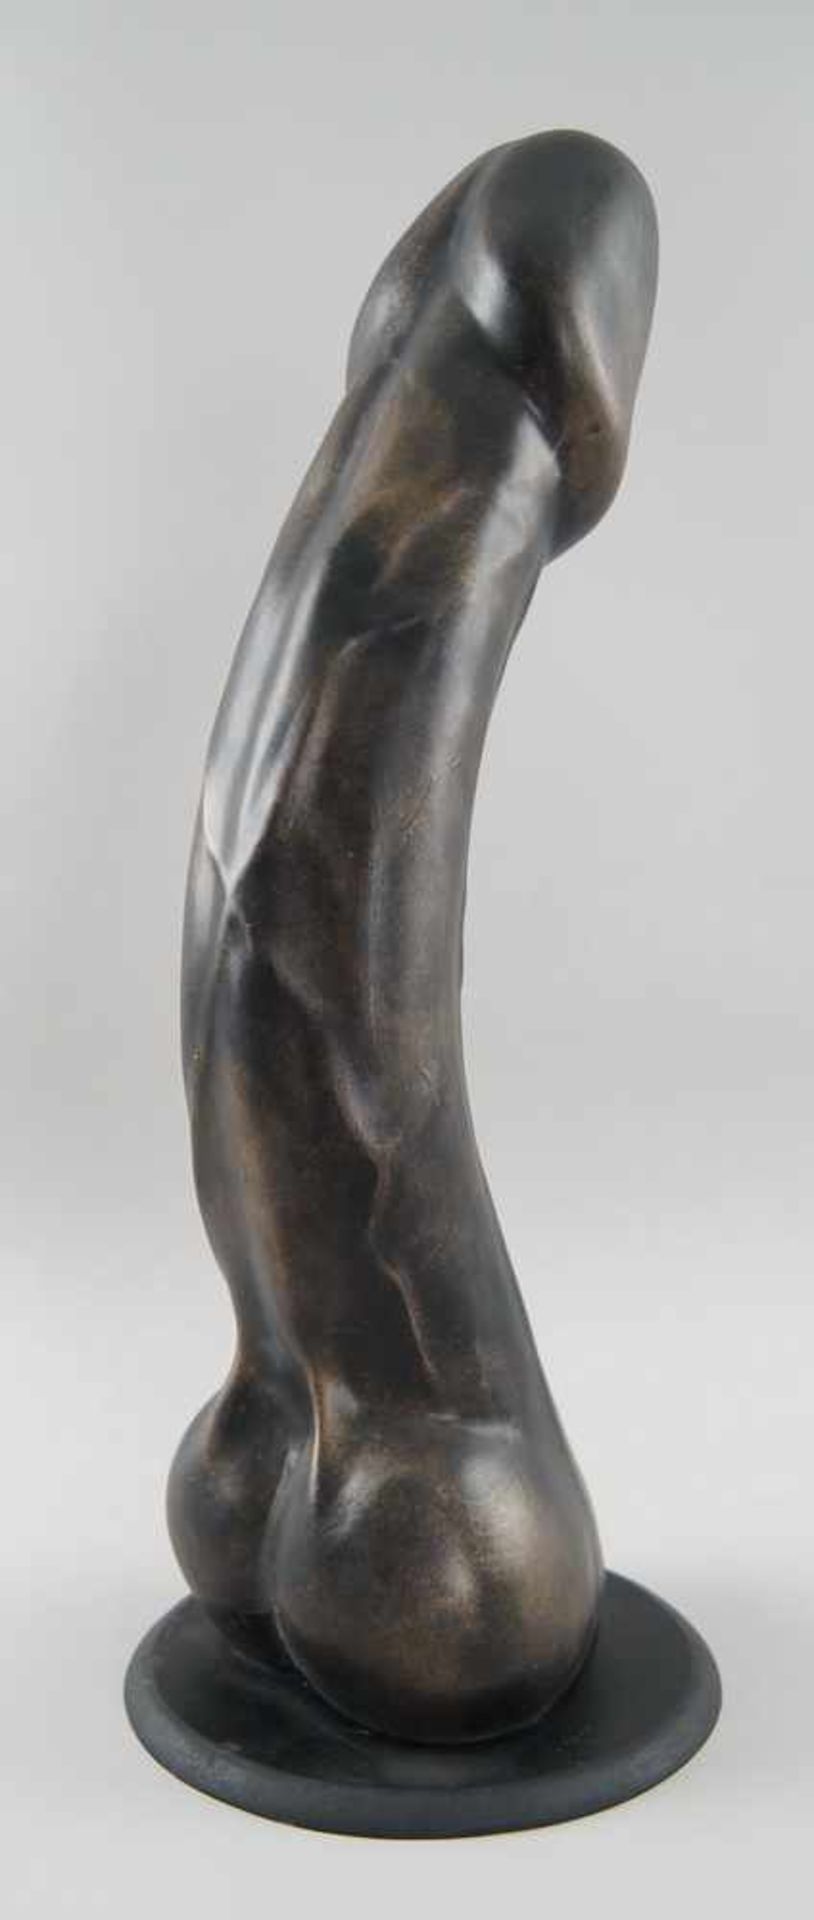 Übergrosser Phallus, Holz geschnitzt, gefasst, H 51 cm - Bild 2 aus 3